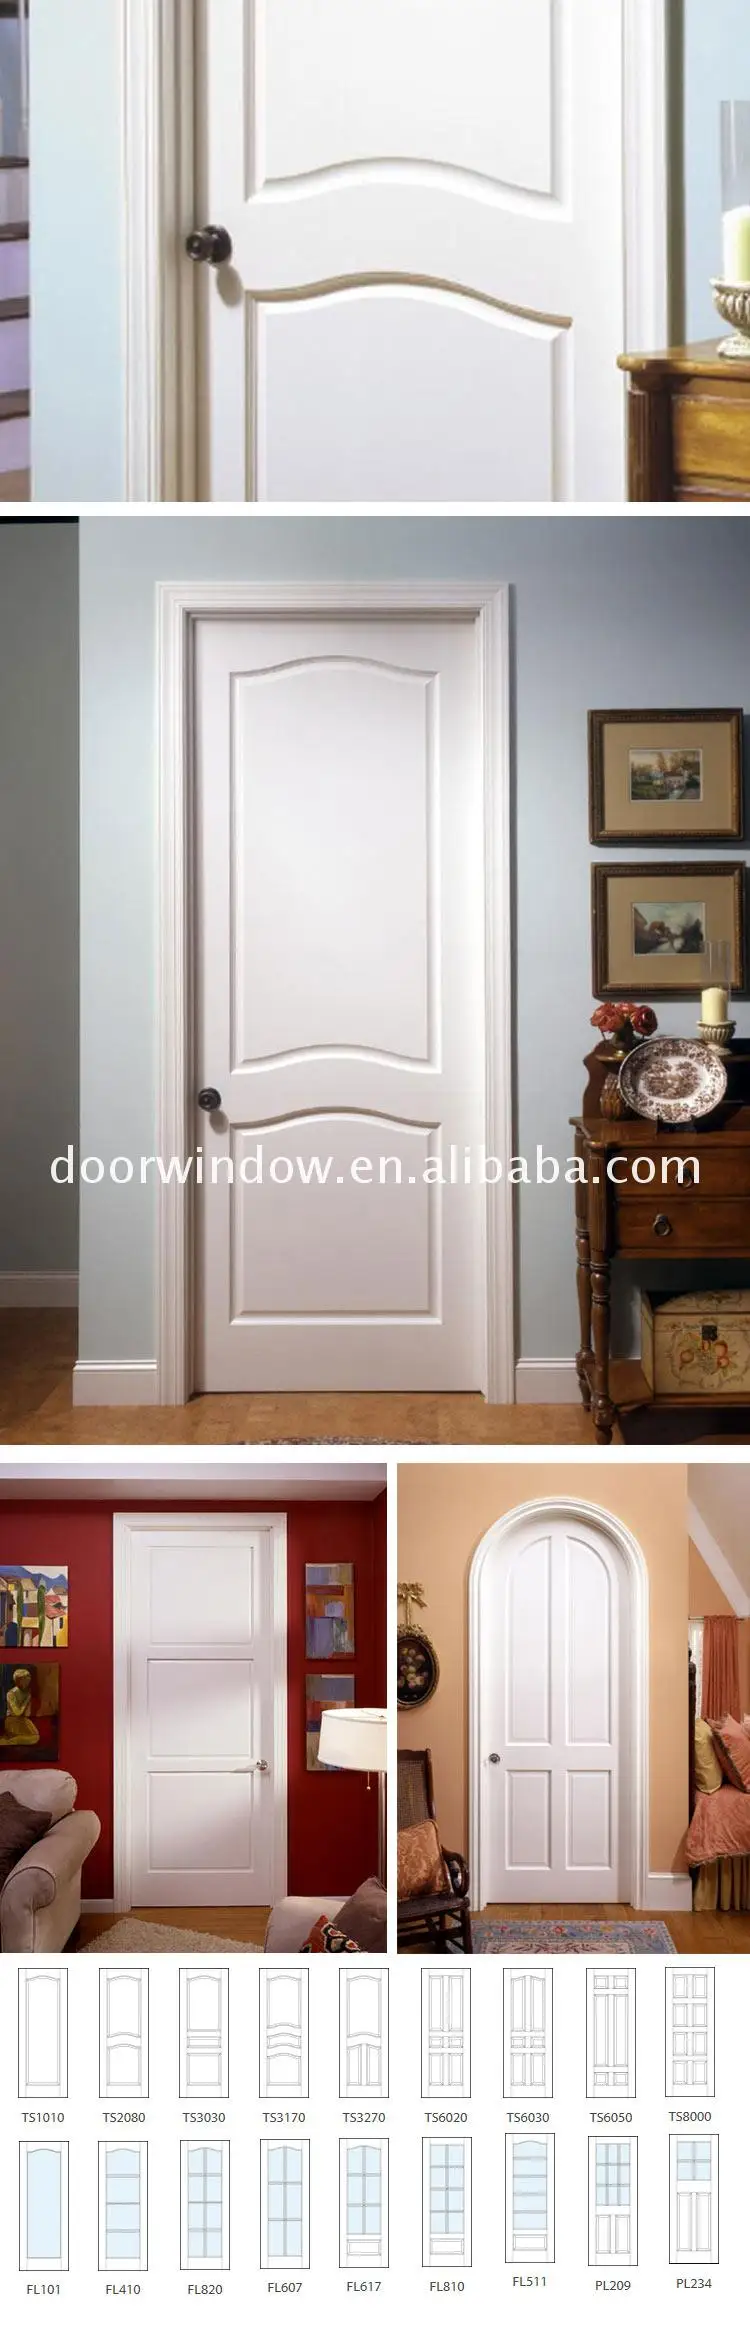 Interior curved wooden door inter wood doors hollow core